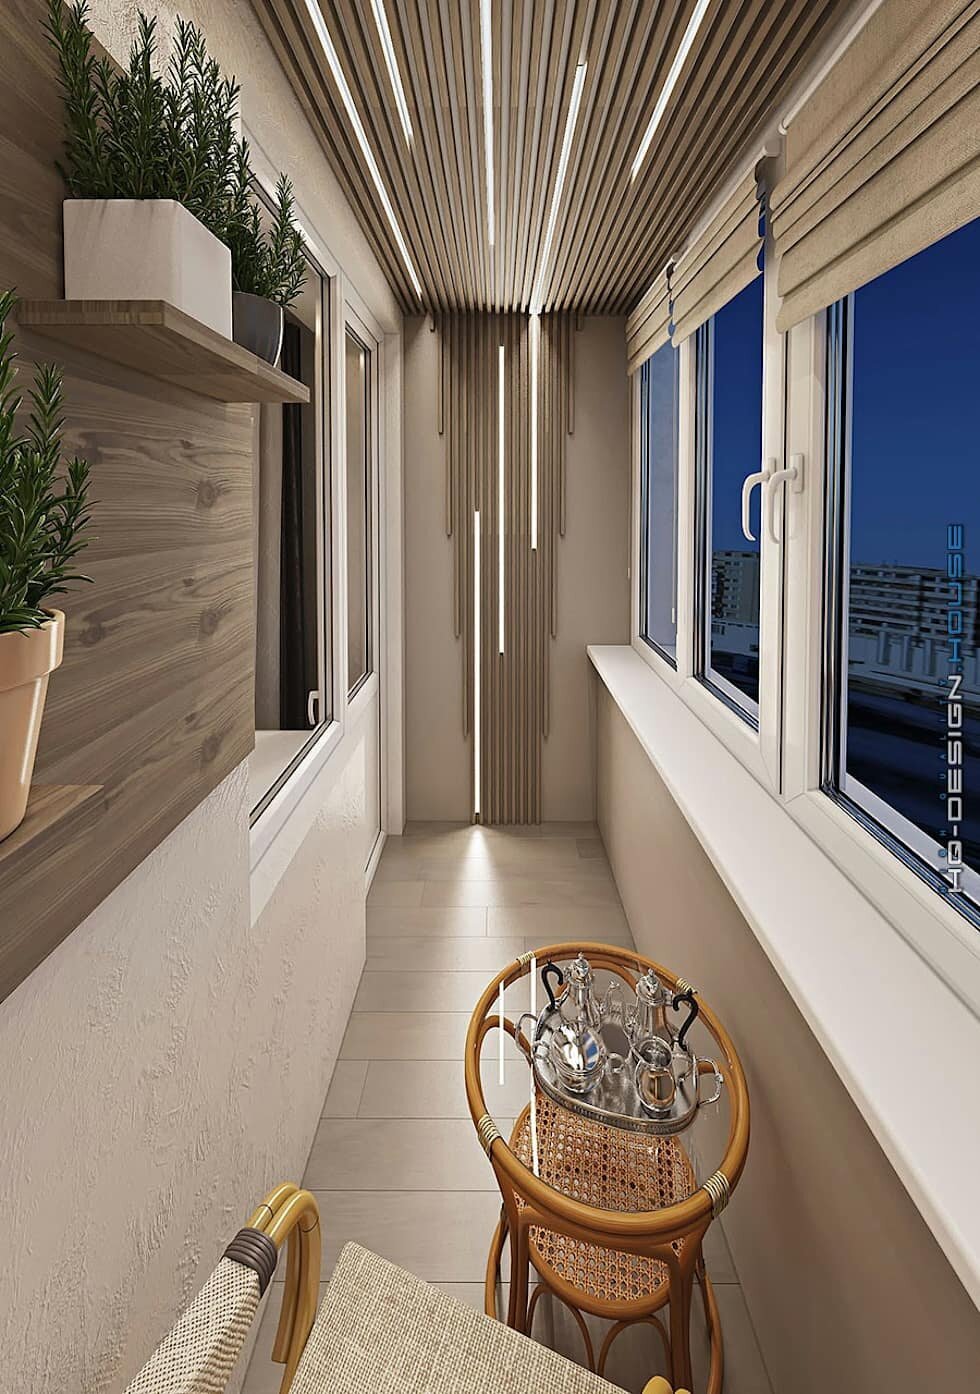 Балкон под ключ фото: варианты внутренней отделки и дизайна балконов и лоджий